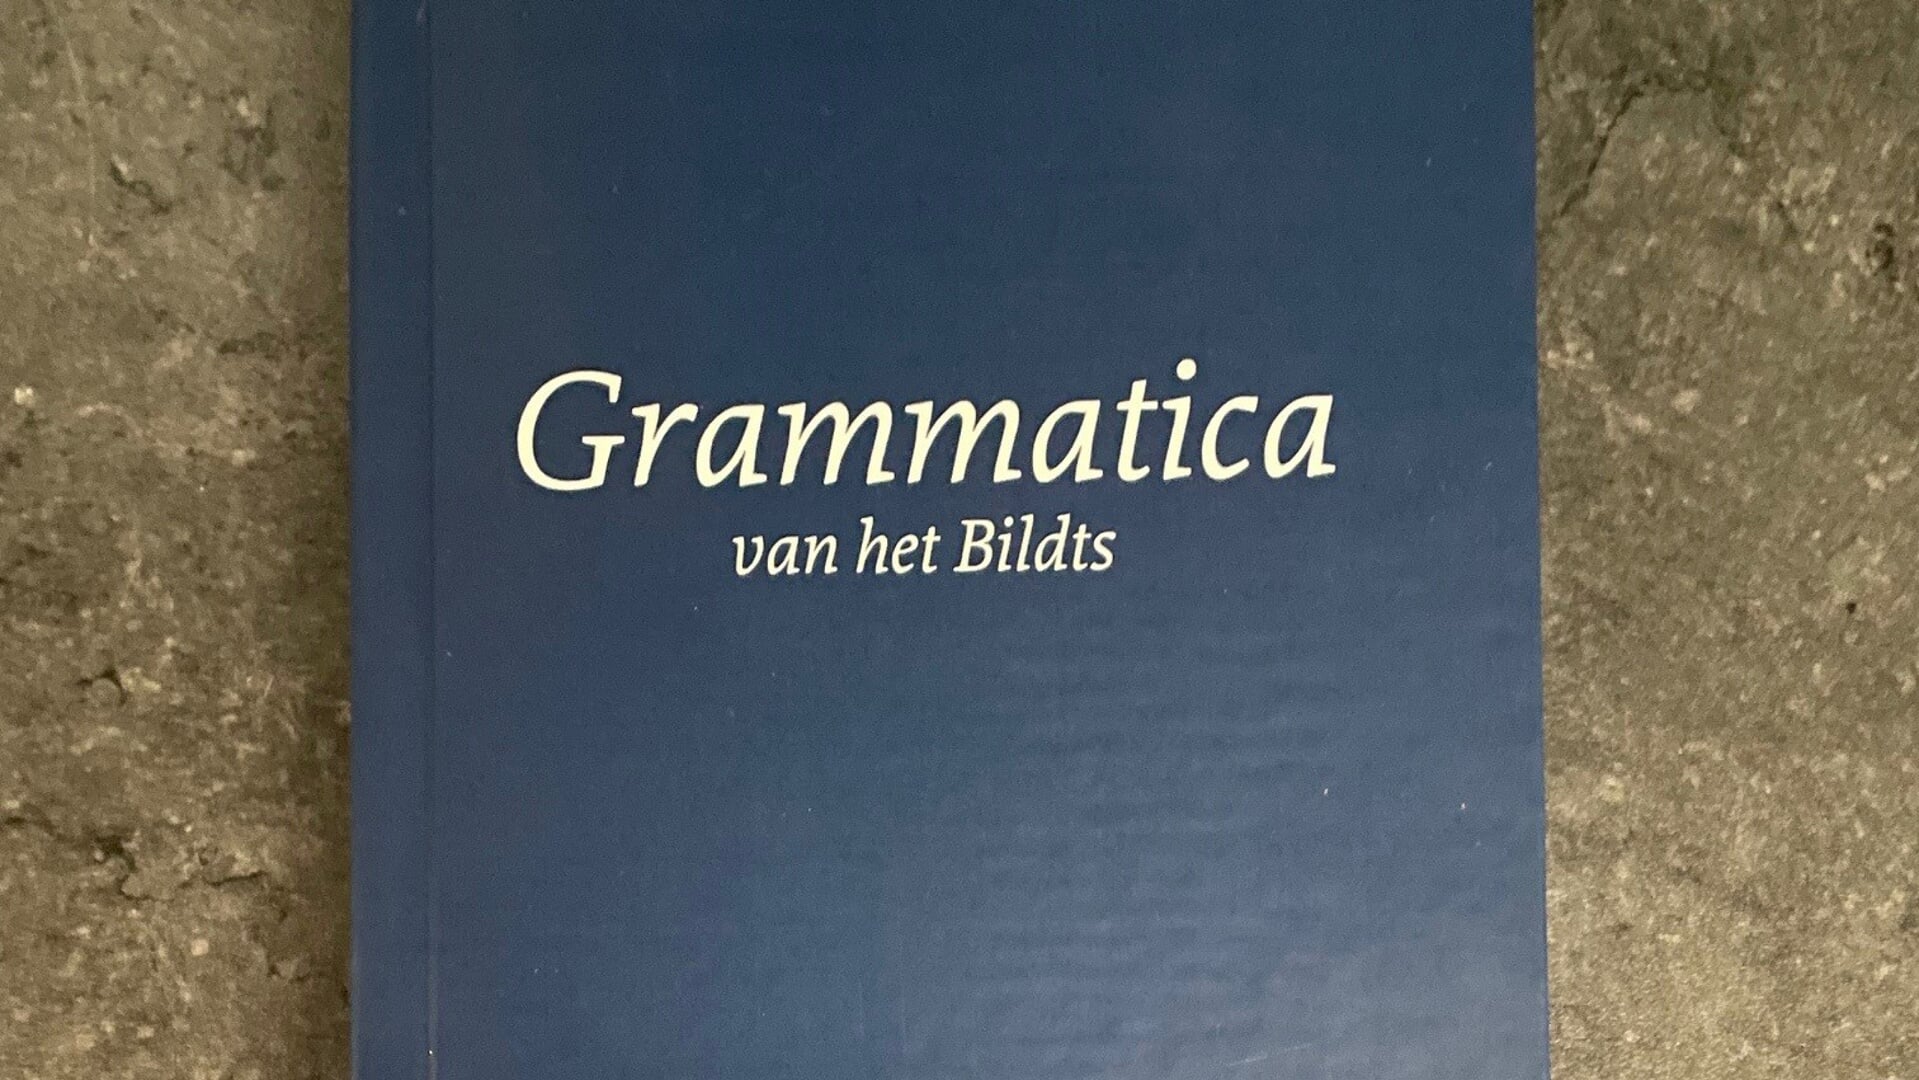 Grammatica van het Bildts